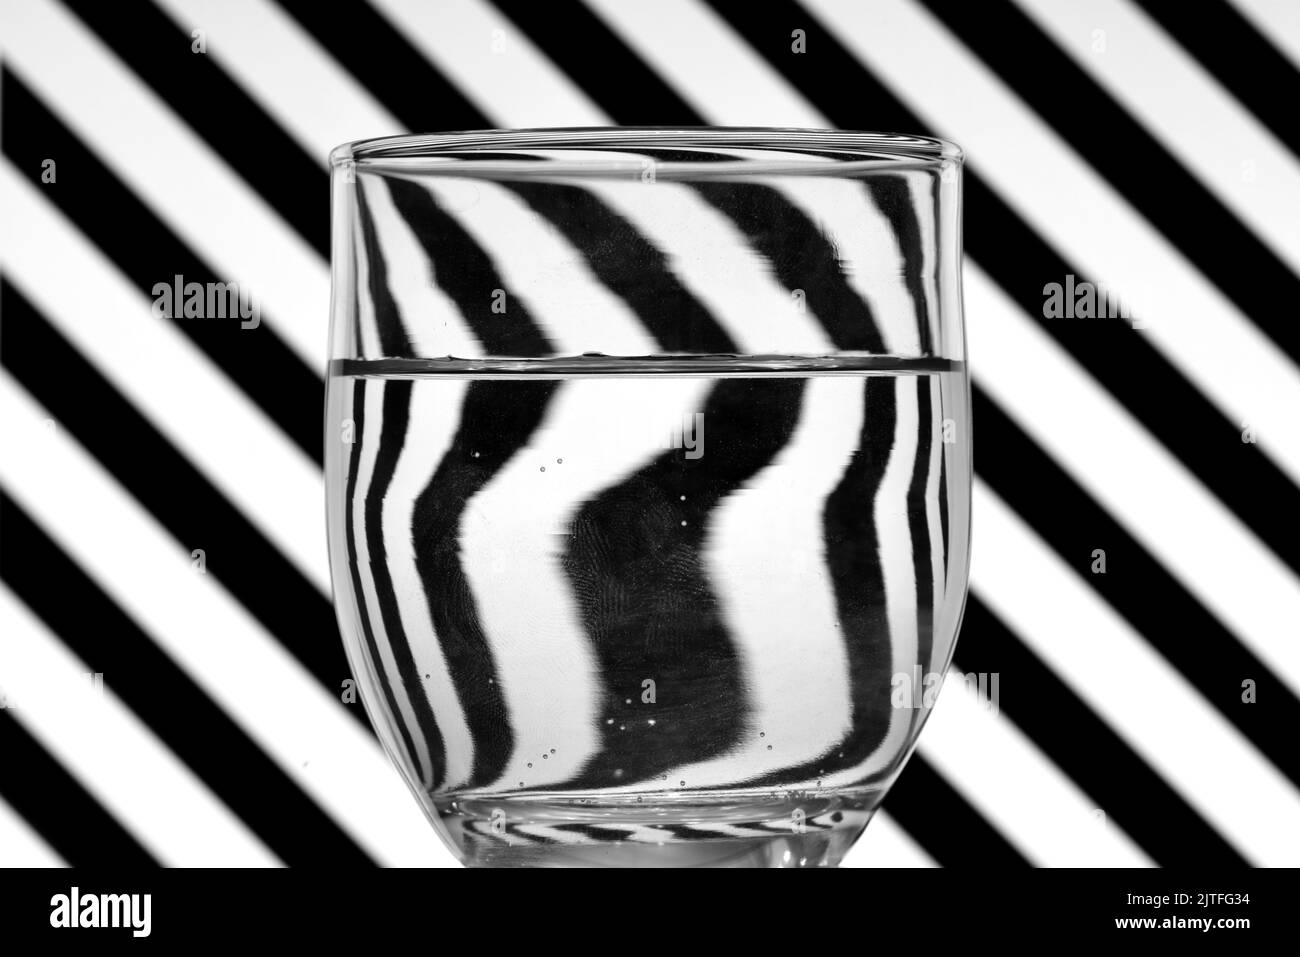 Ilusión óptica creada mediante la refracción de la luz, lineas oblicuas en blanco y negro reflejadas en un vaso de agua Stock Photo